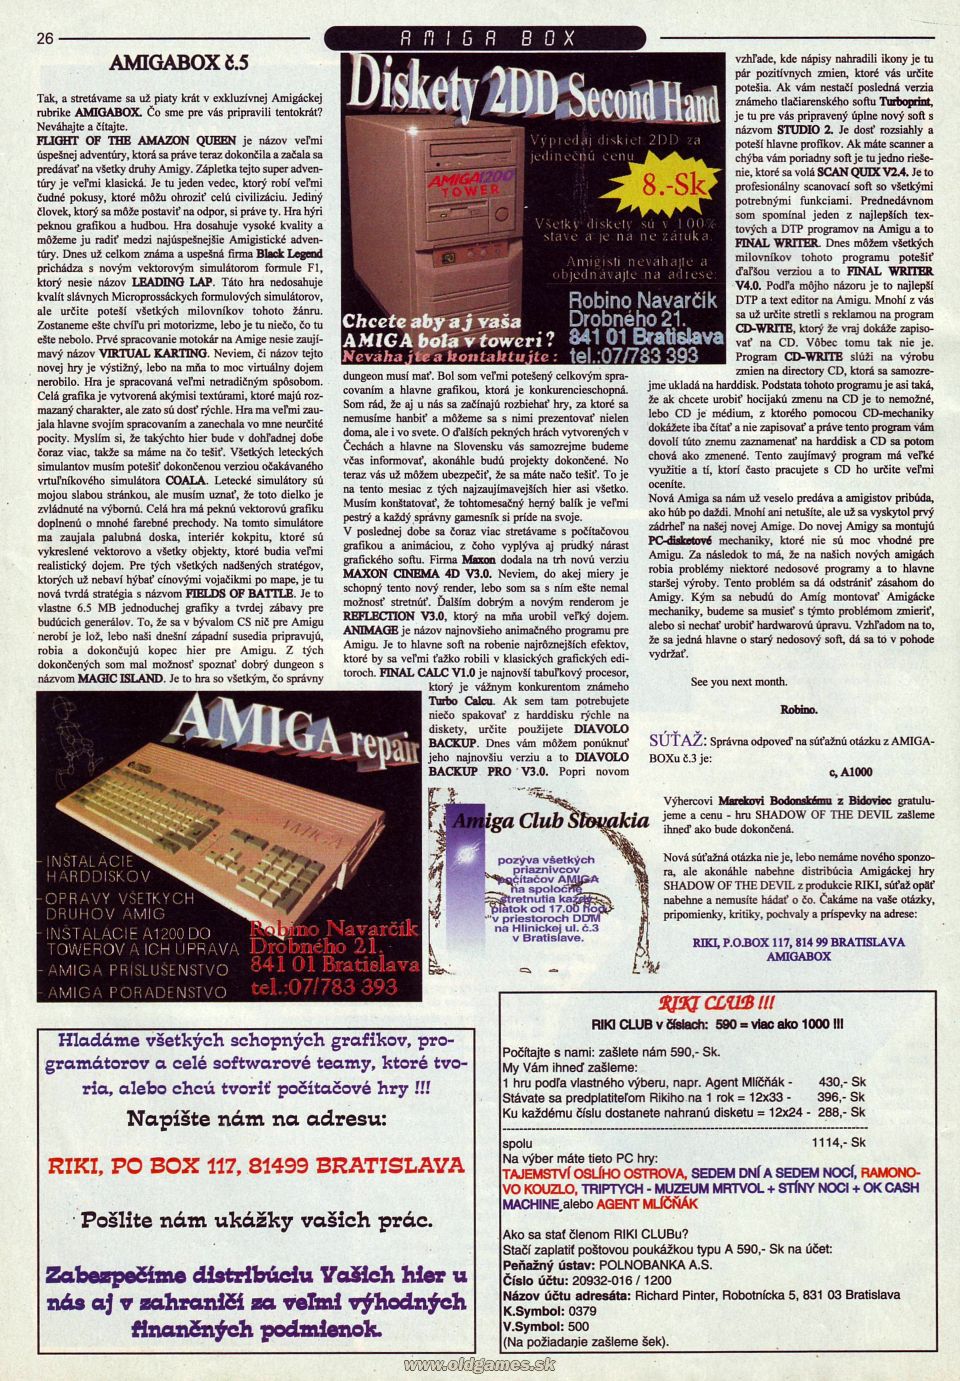 AmigaBox 5